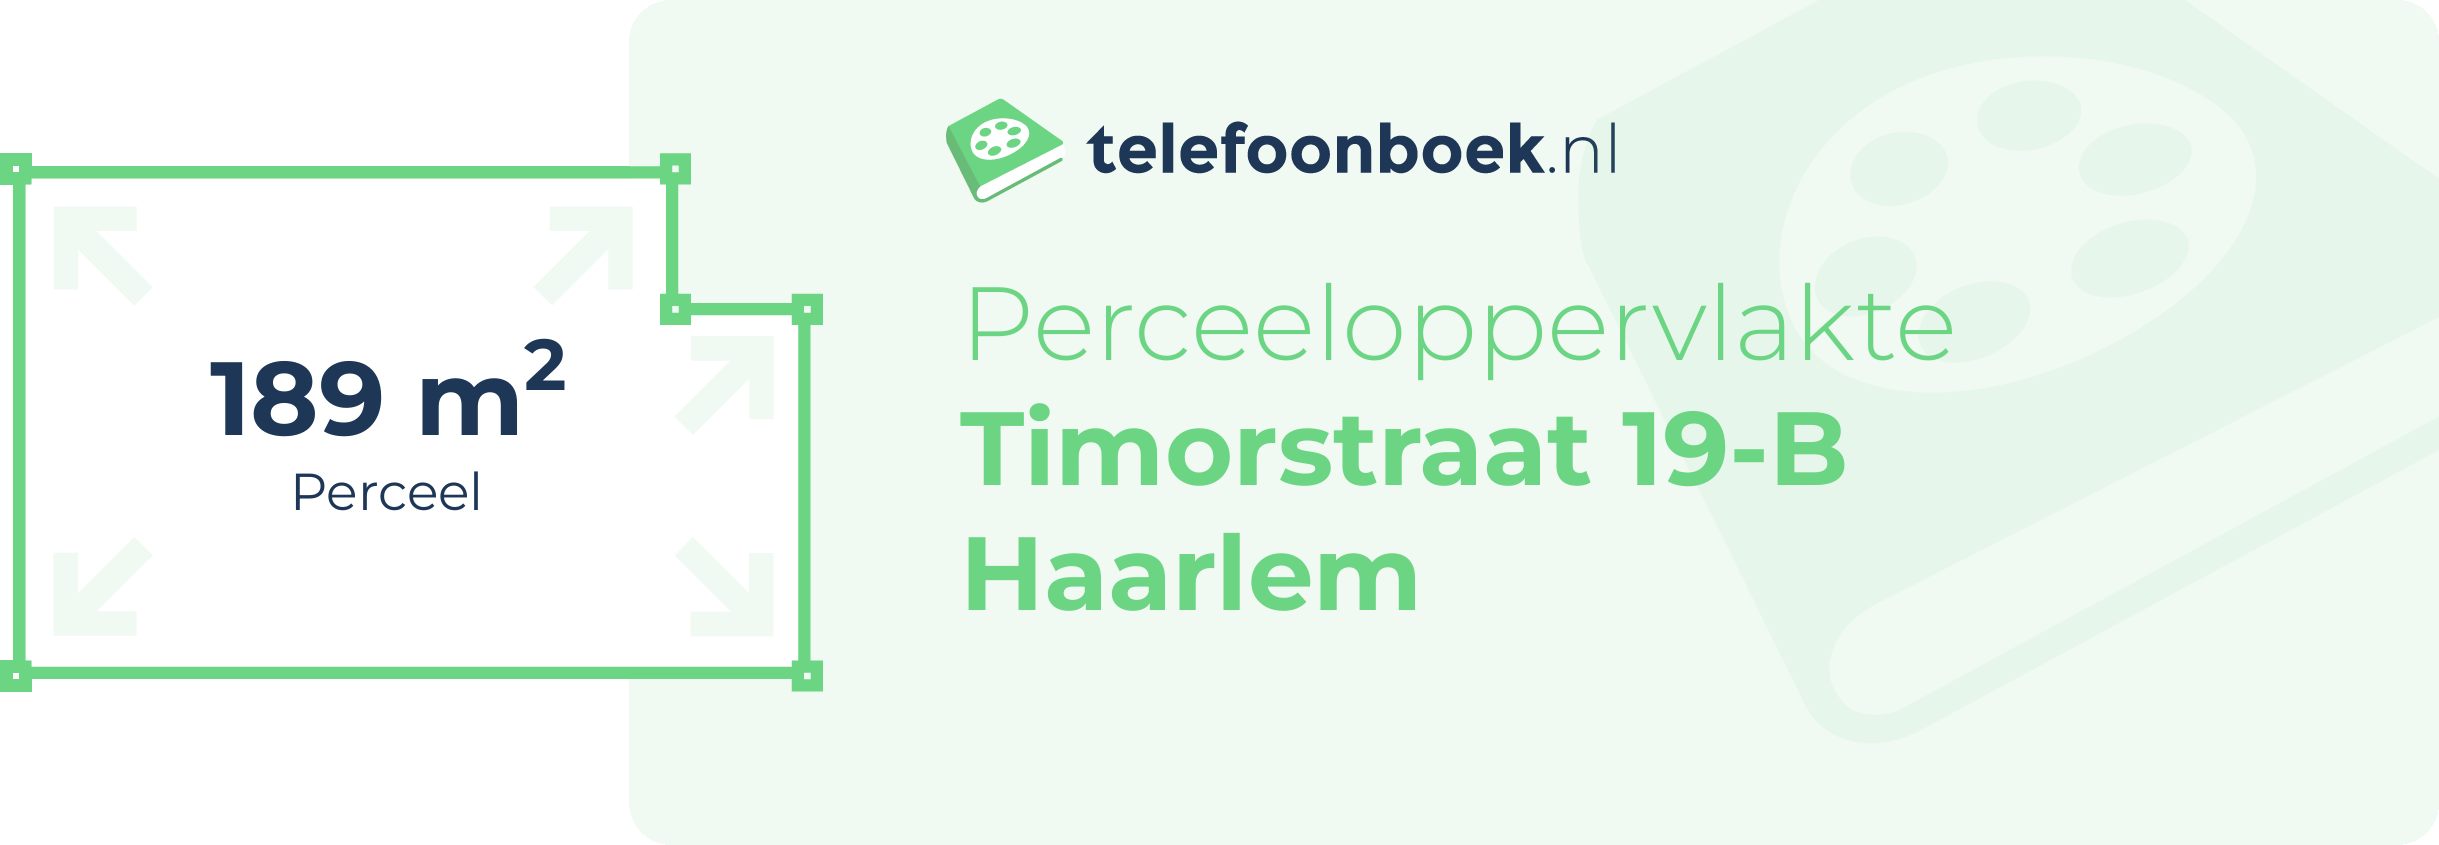 Perceeloppervlakte Timorstraat 19-B Haarlem